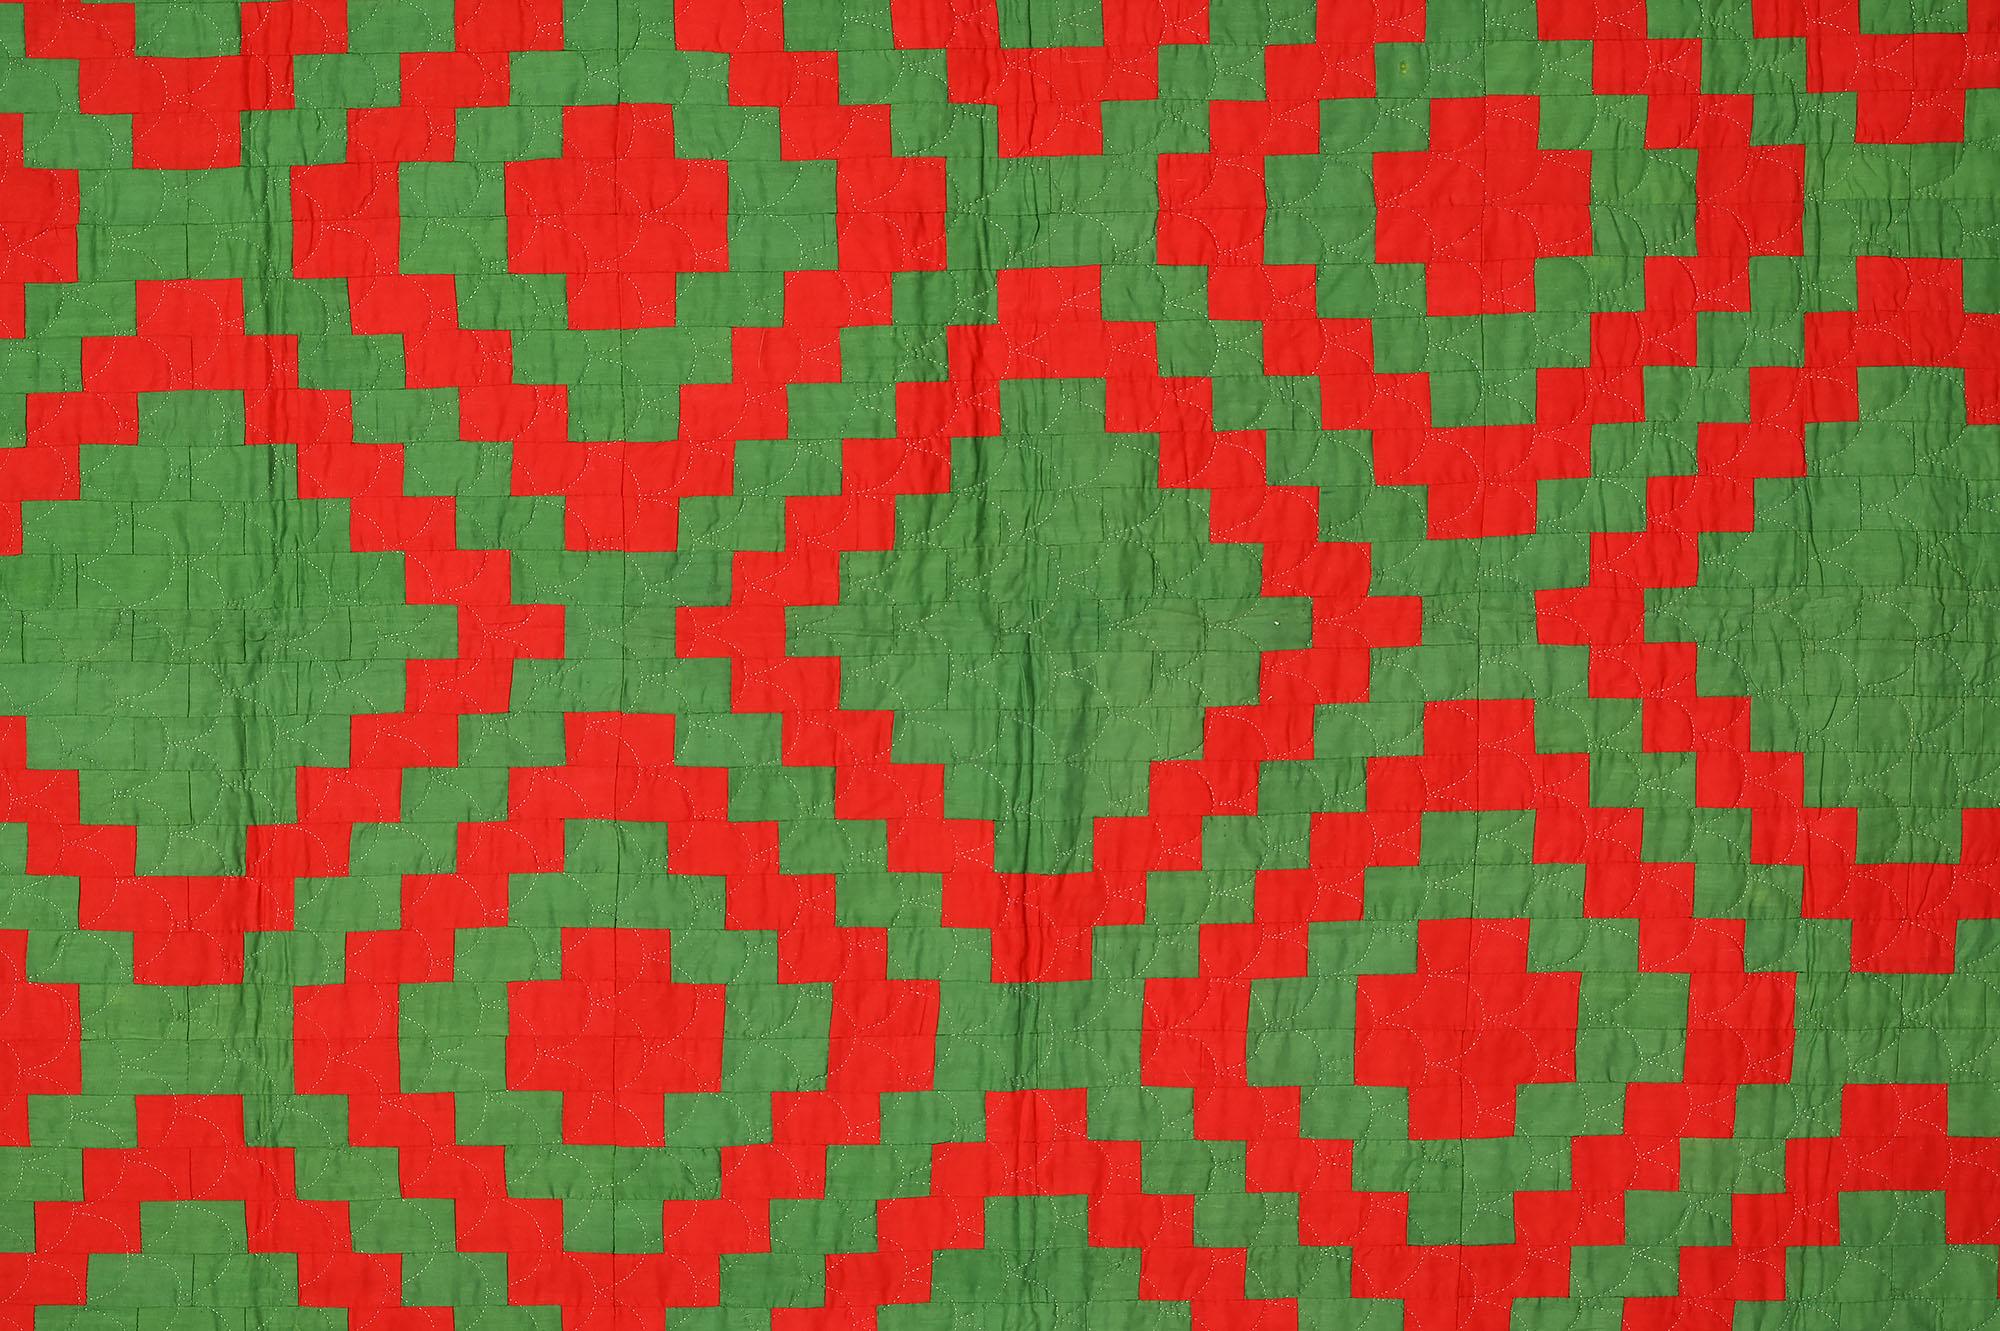 Dieser mennonitische Quilt mit Originalmuster ähnelt am ehesten dem Philadelphia Pavement-Muster. Die Verwendung von Volltonfarben verändert das Erscheinungsbild erheblich. Es ist interessant, dass die Stücke rechteckig sind und nicht wie üblich